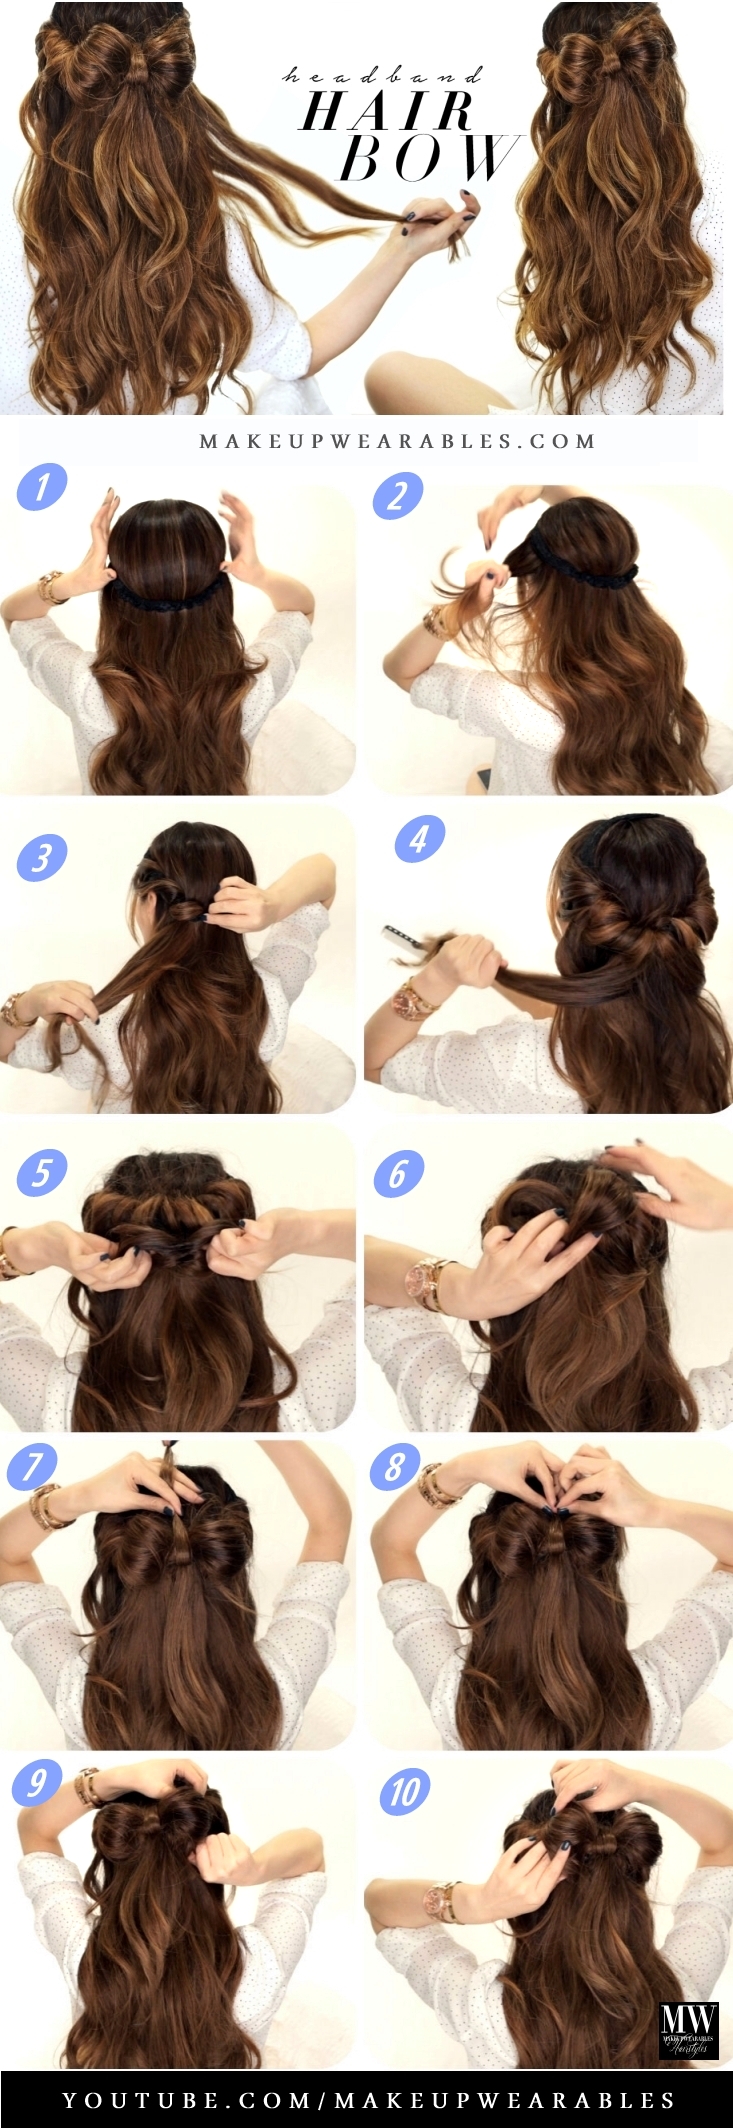 Headband Hair Bow Hair Tutorial